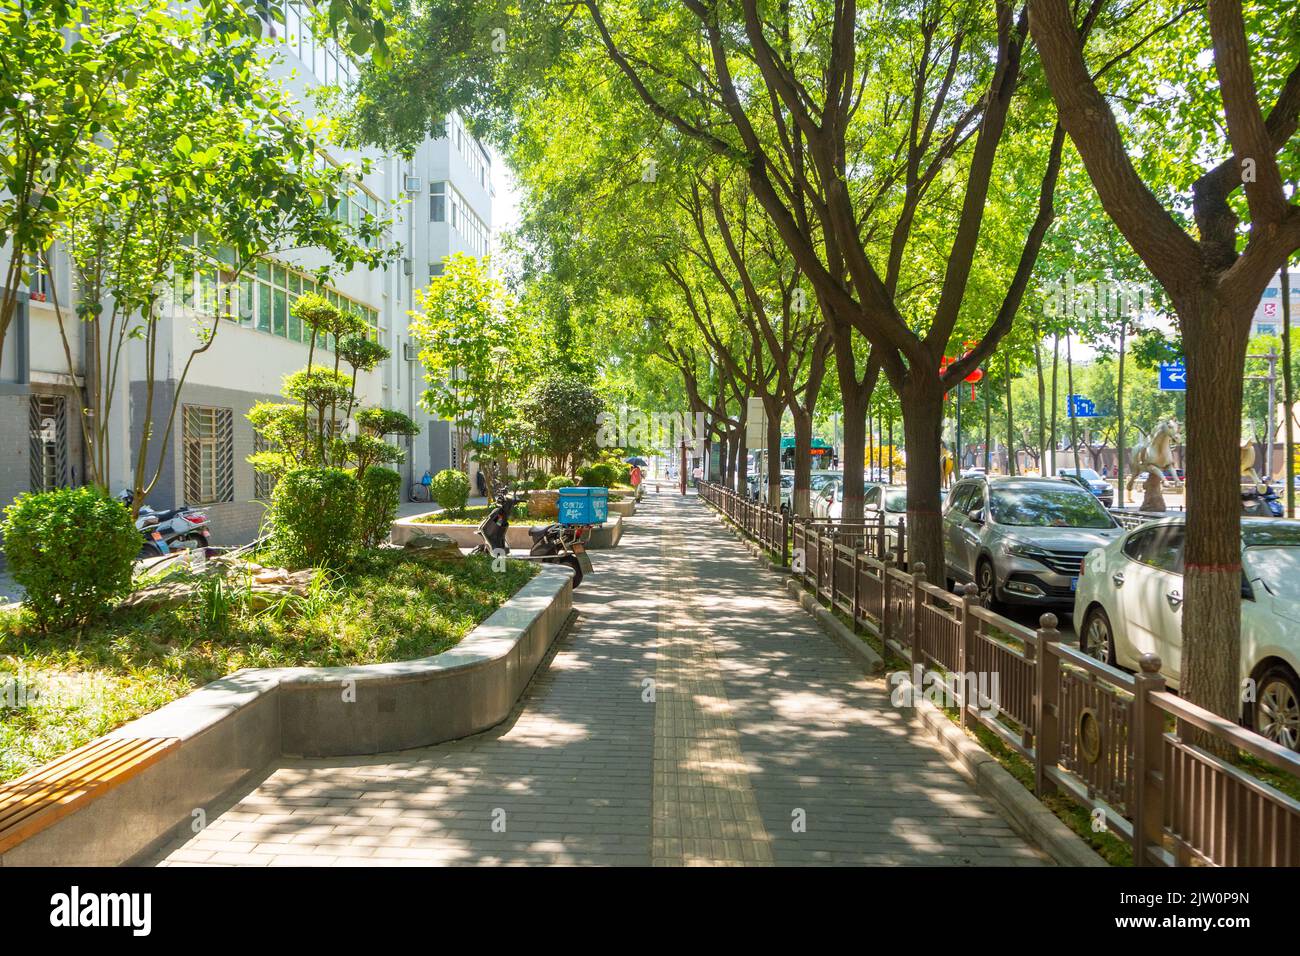 Un trottoir moderne dans le centre-ville. La zone est bordée de beaux arbres qui projettent l'ombre dans la passerelle piétonne. Banque D'Images